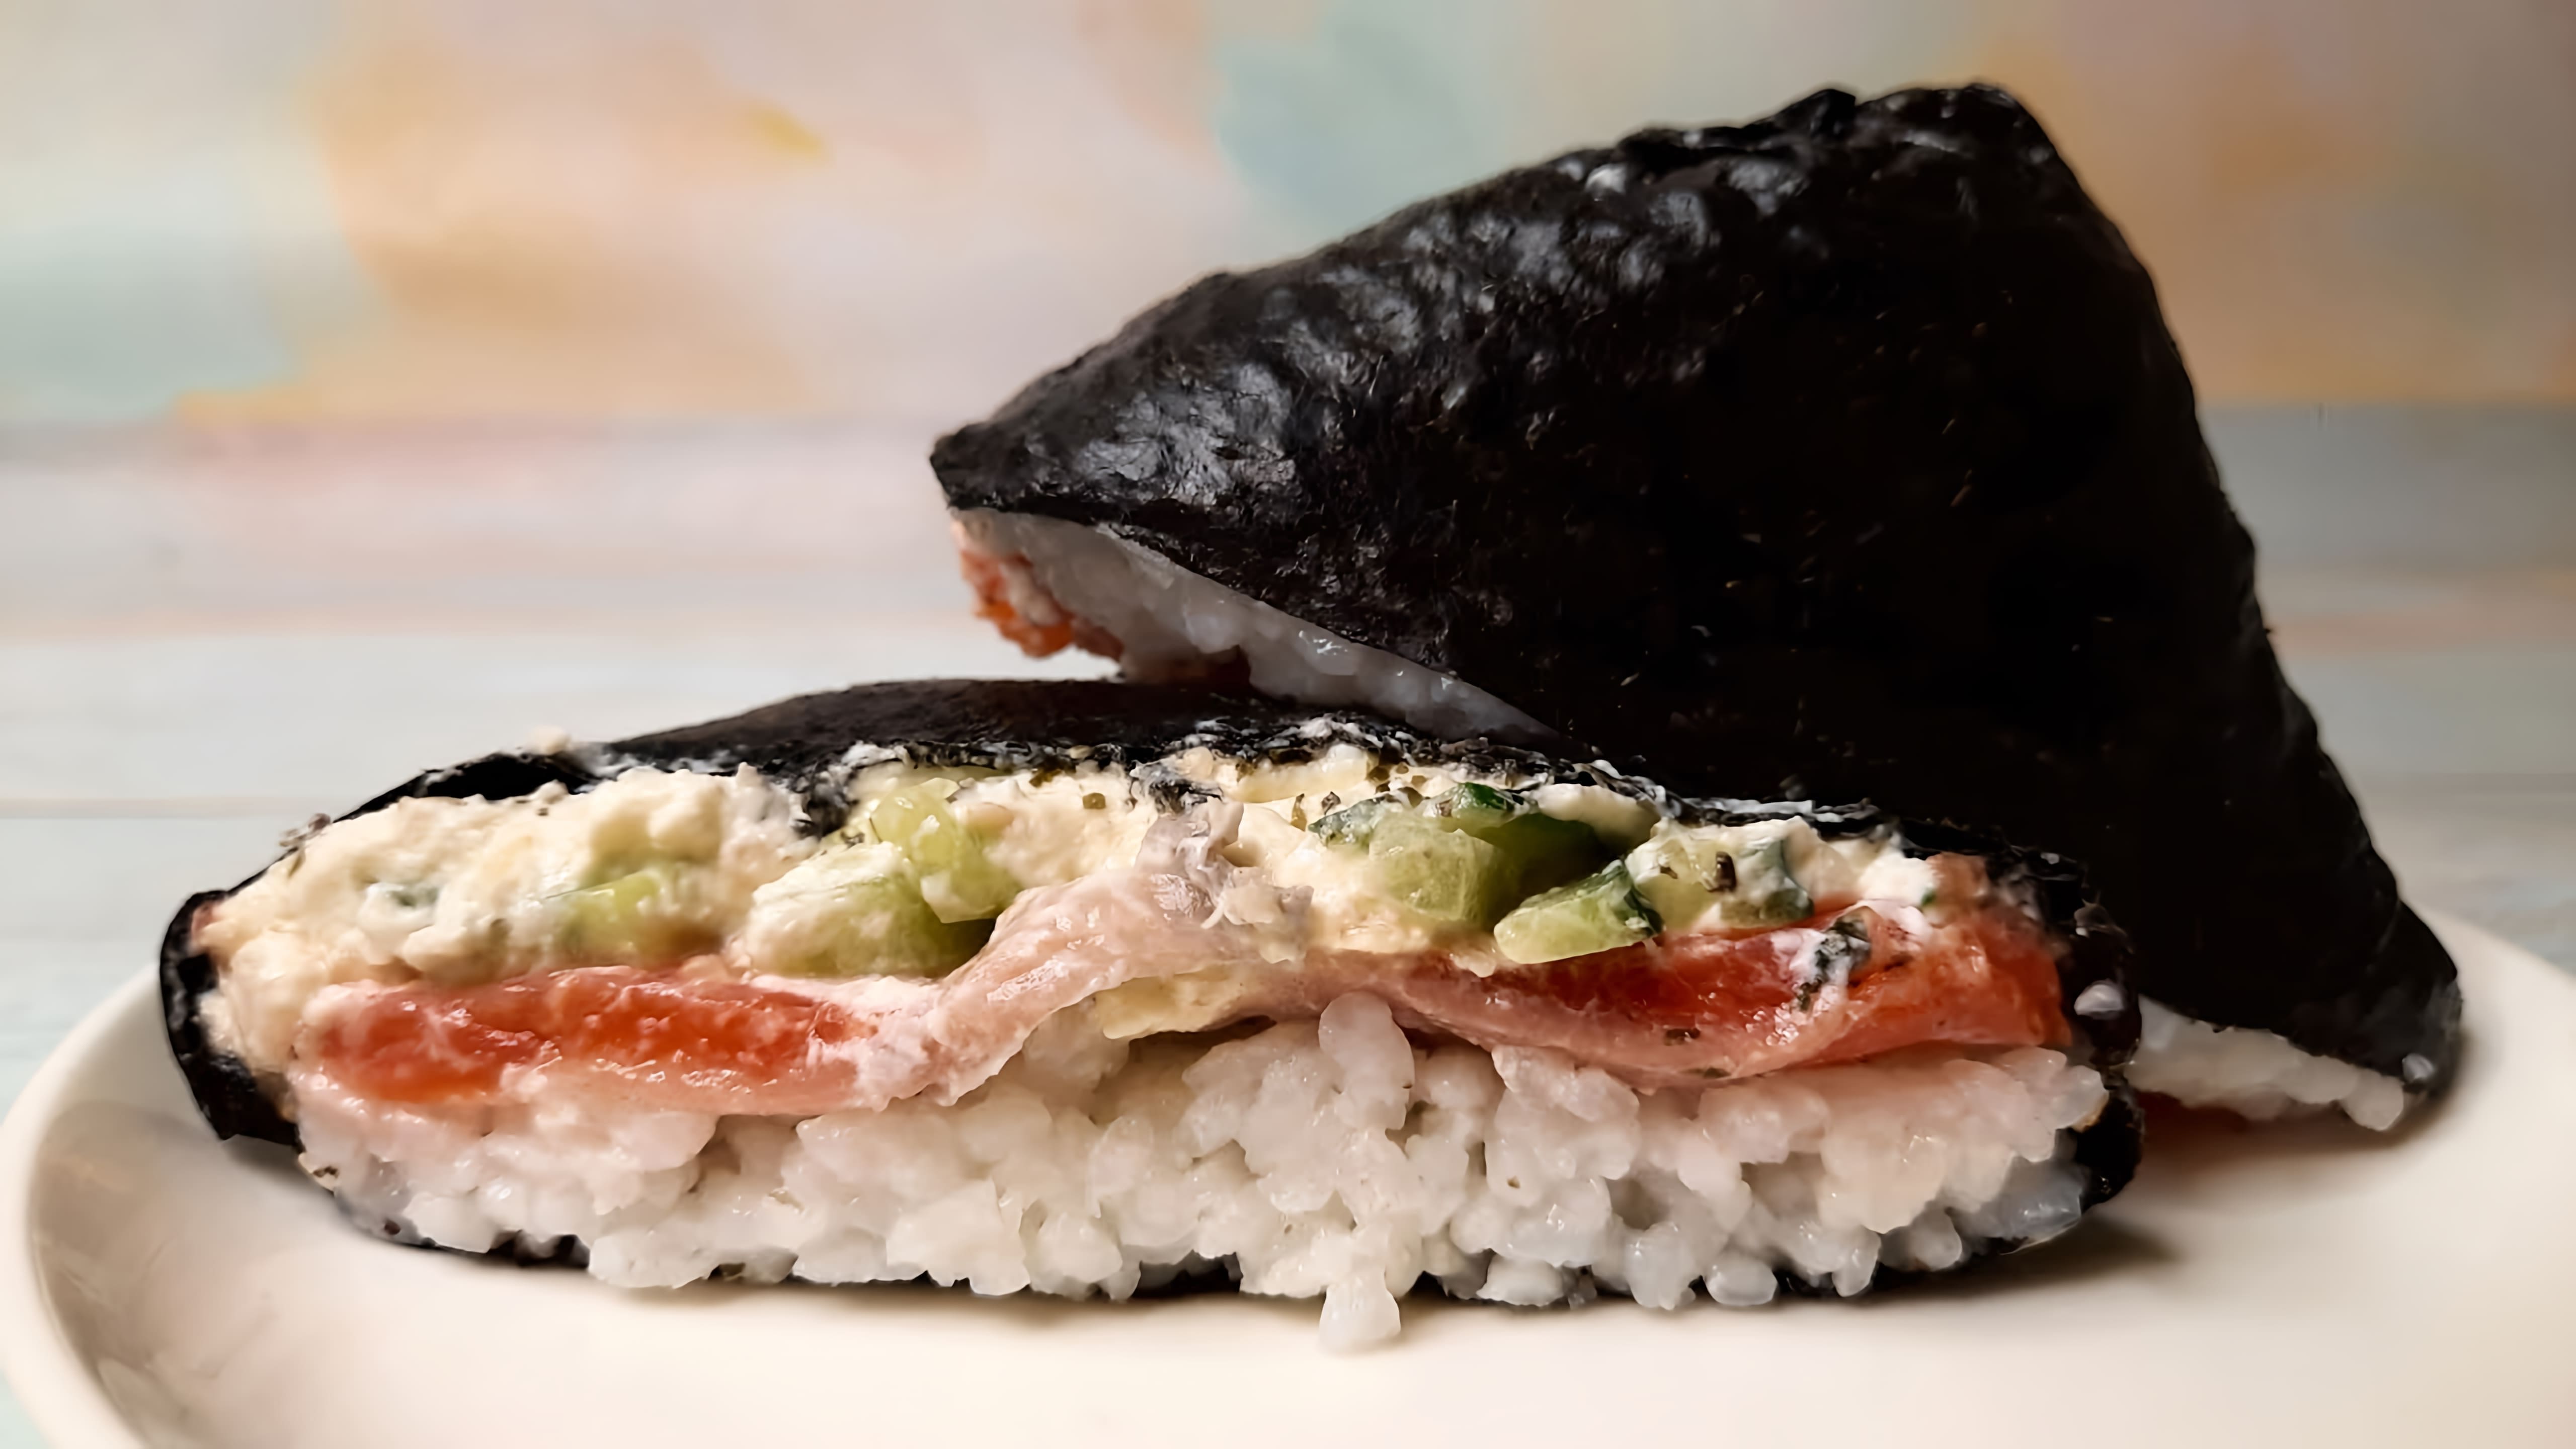 В этом видео демонстрируется процесс приготовления суши сэндвича или ленивых роллов